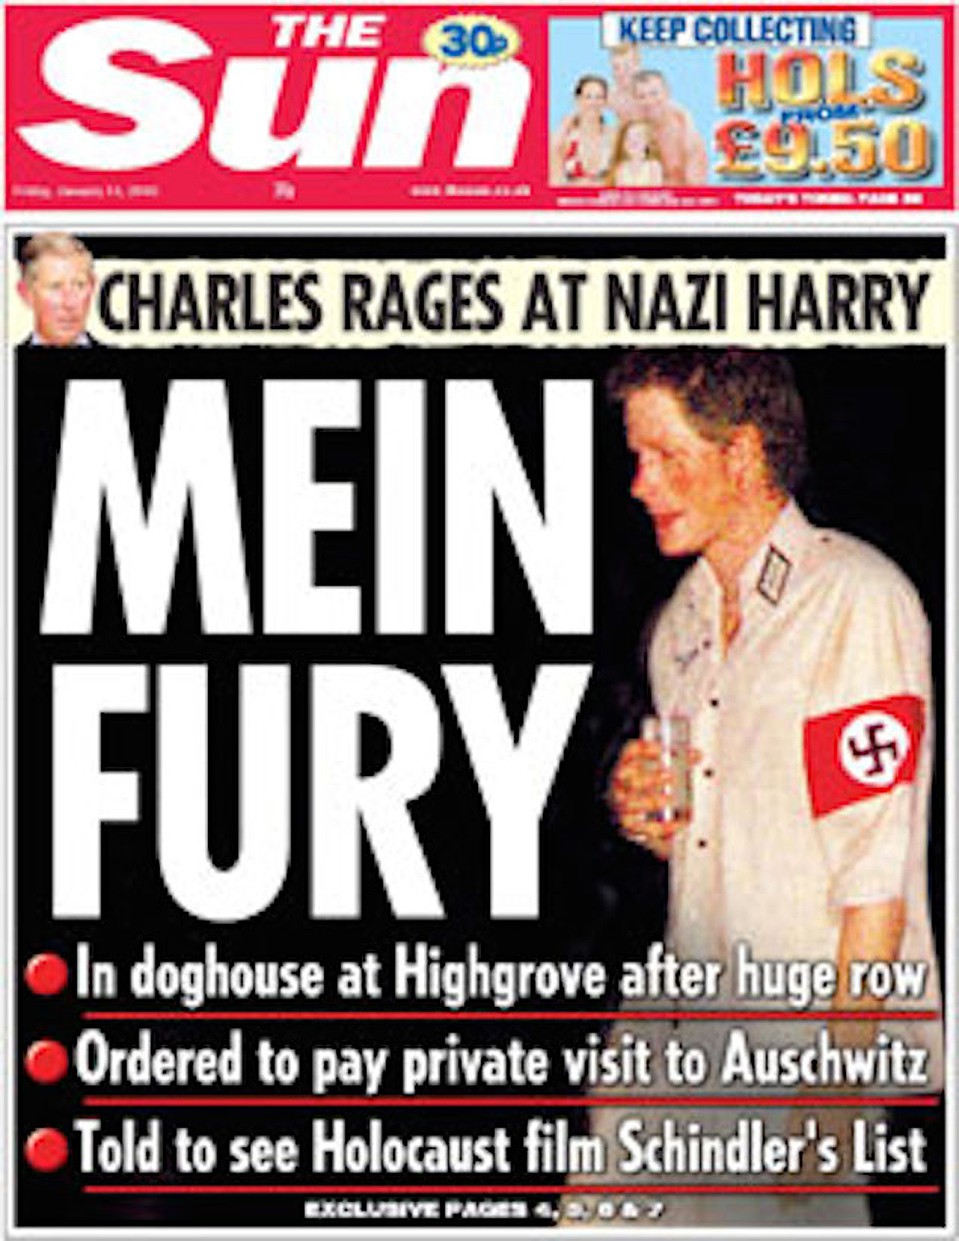 2005 год: угодил в нацистский скандал. 